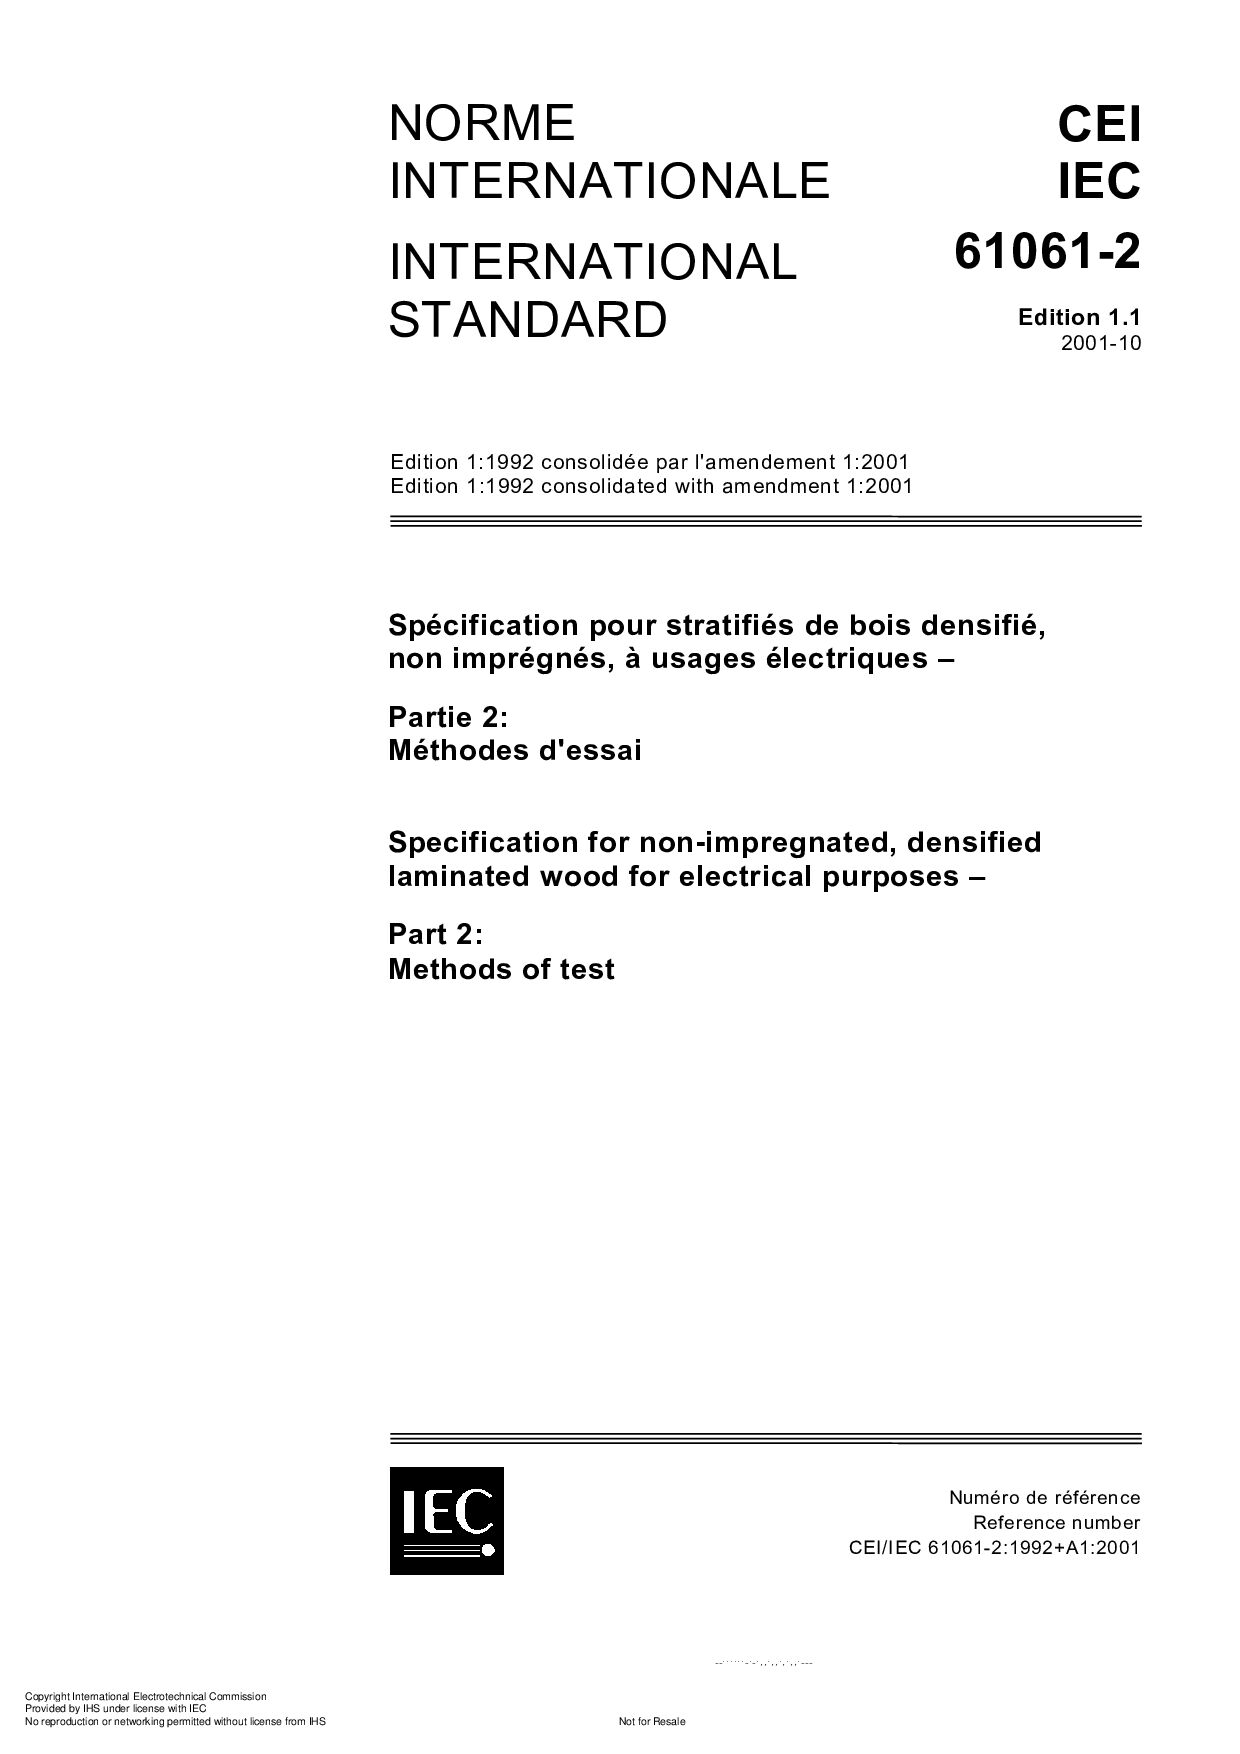 IEC 61061-2:2001